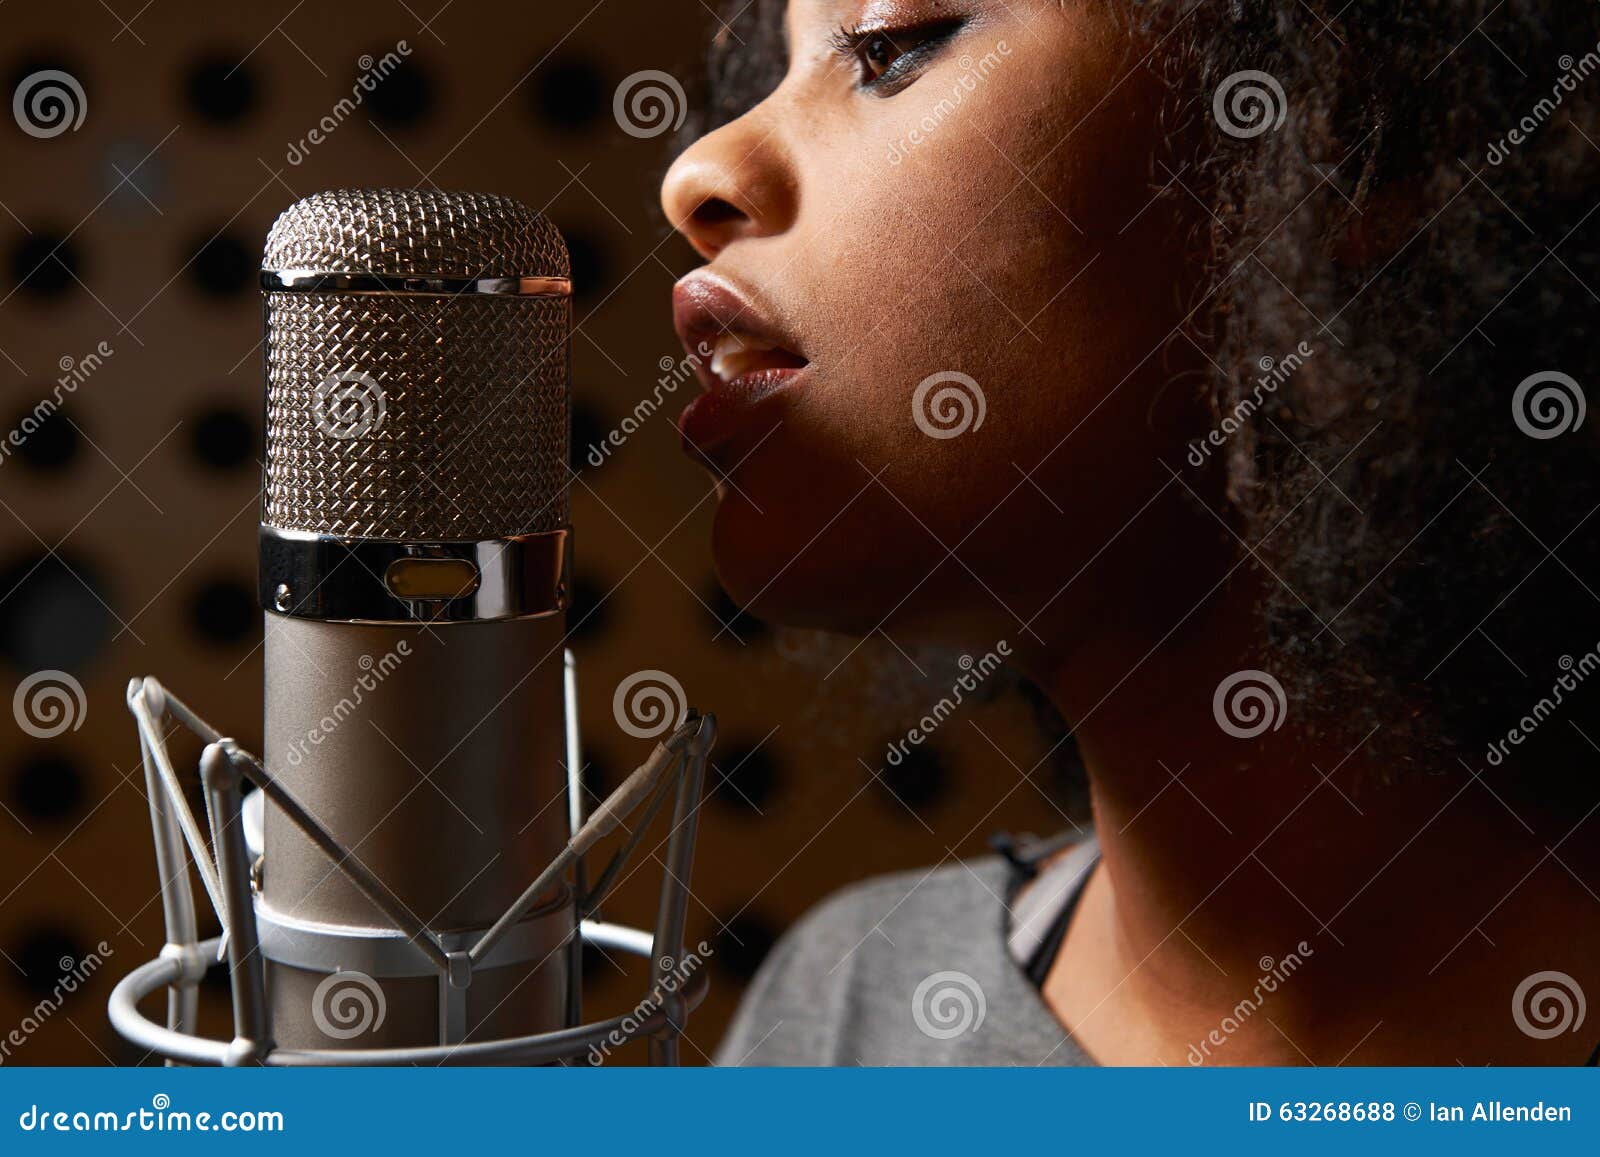 female vocalist in recording studio